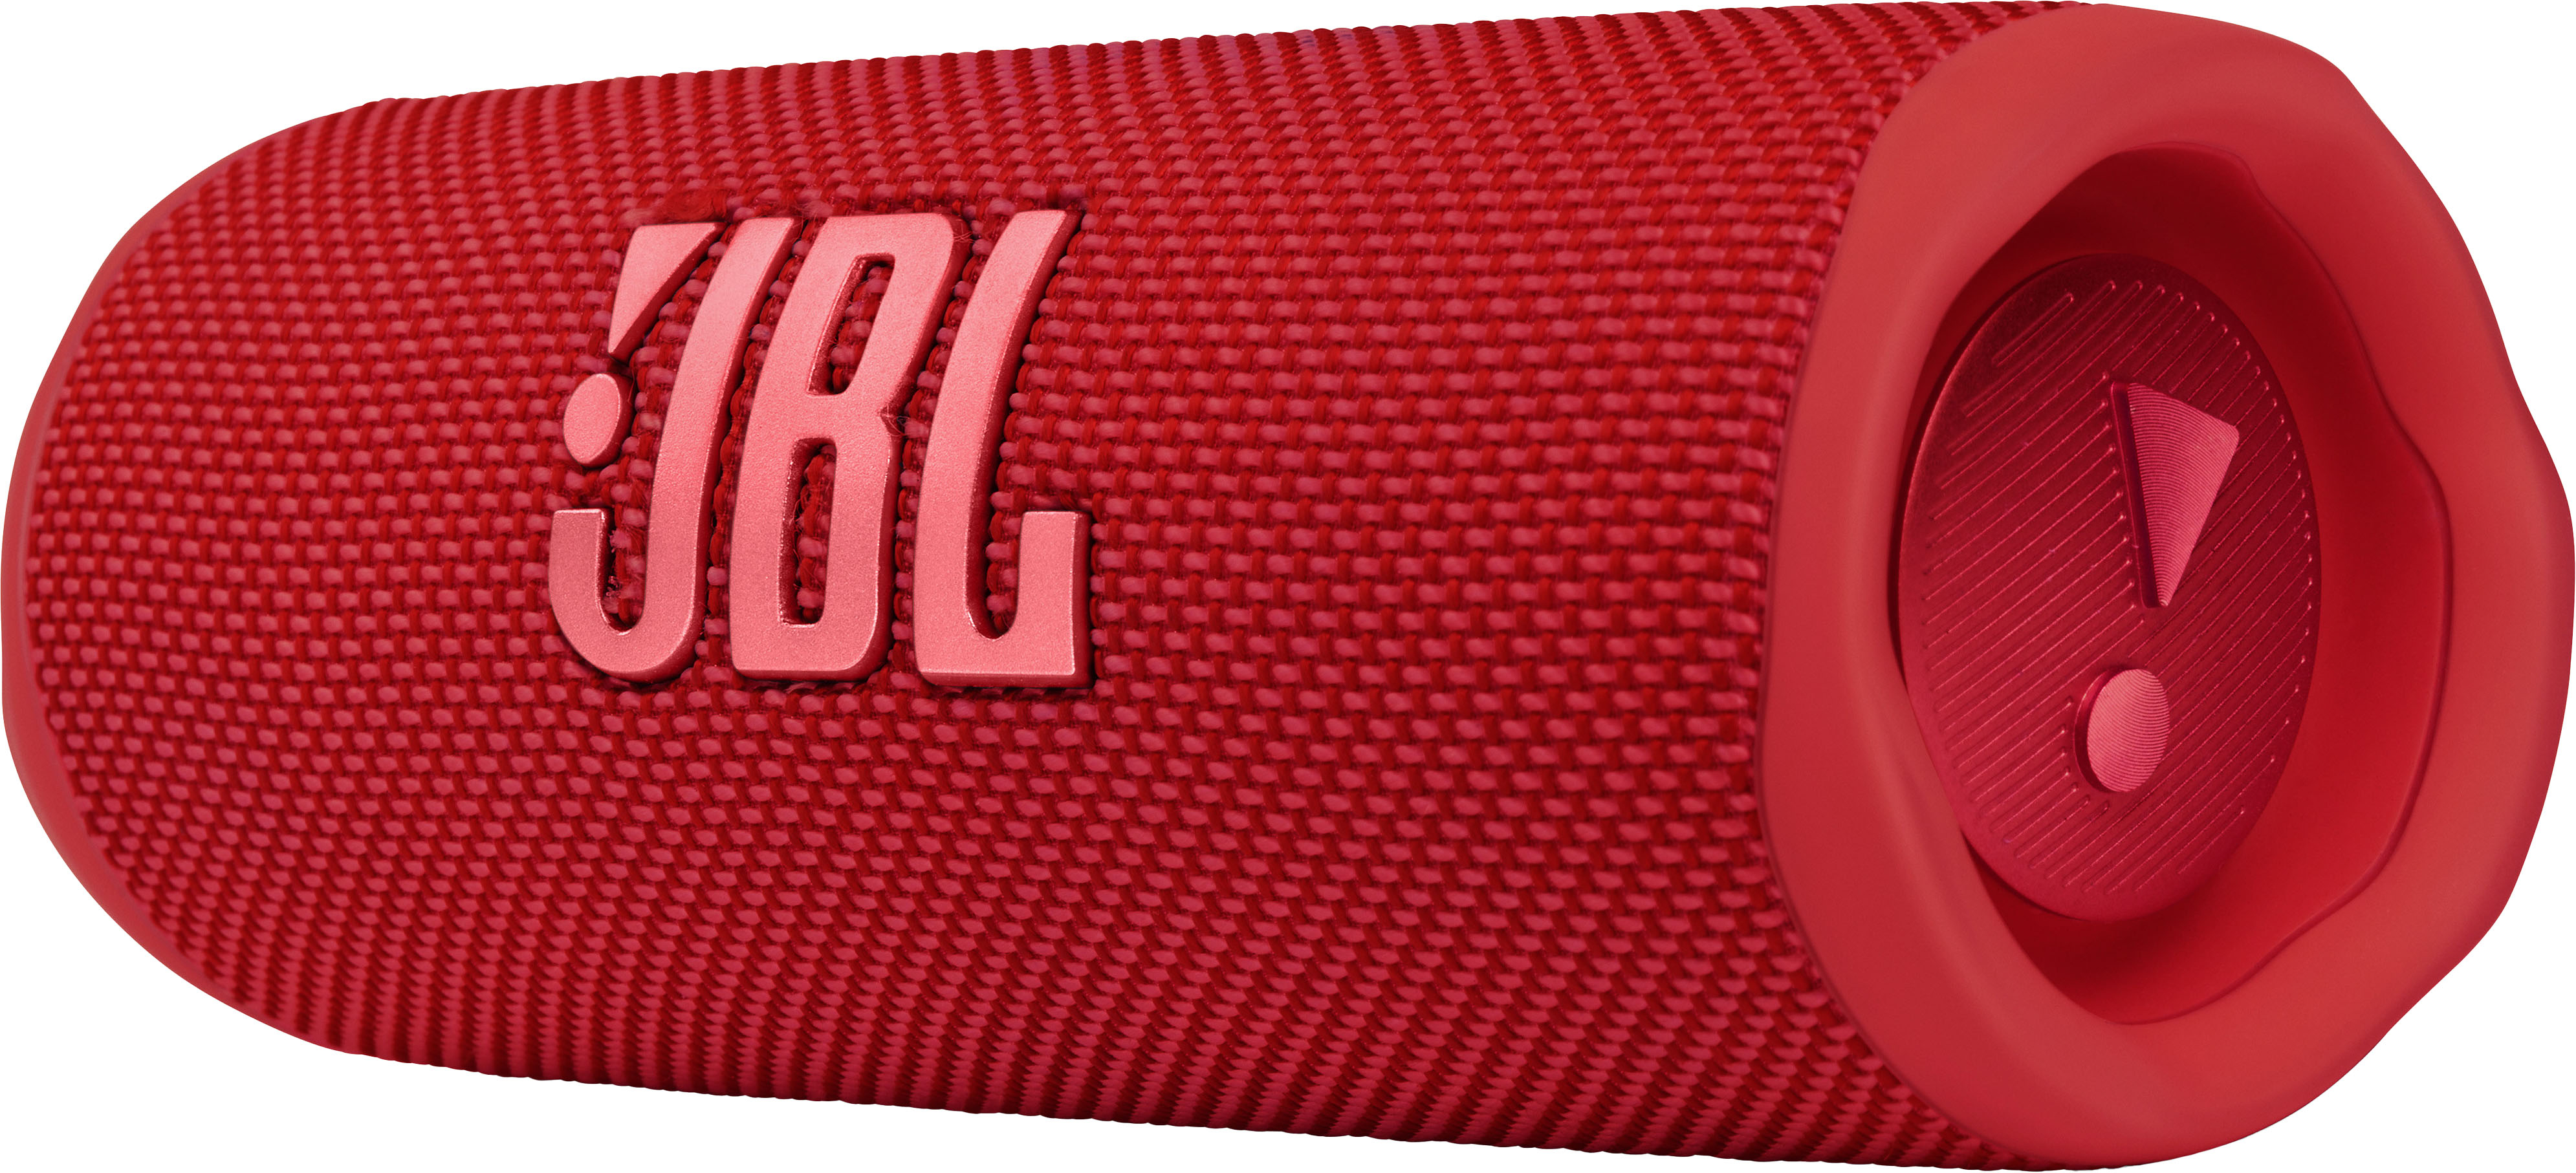 Angle View: JBL - FLIP6 Portable Waterproof Speaker - Red